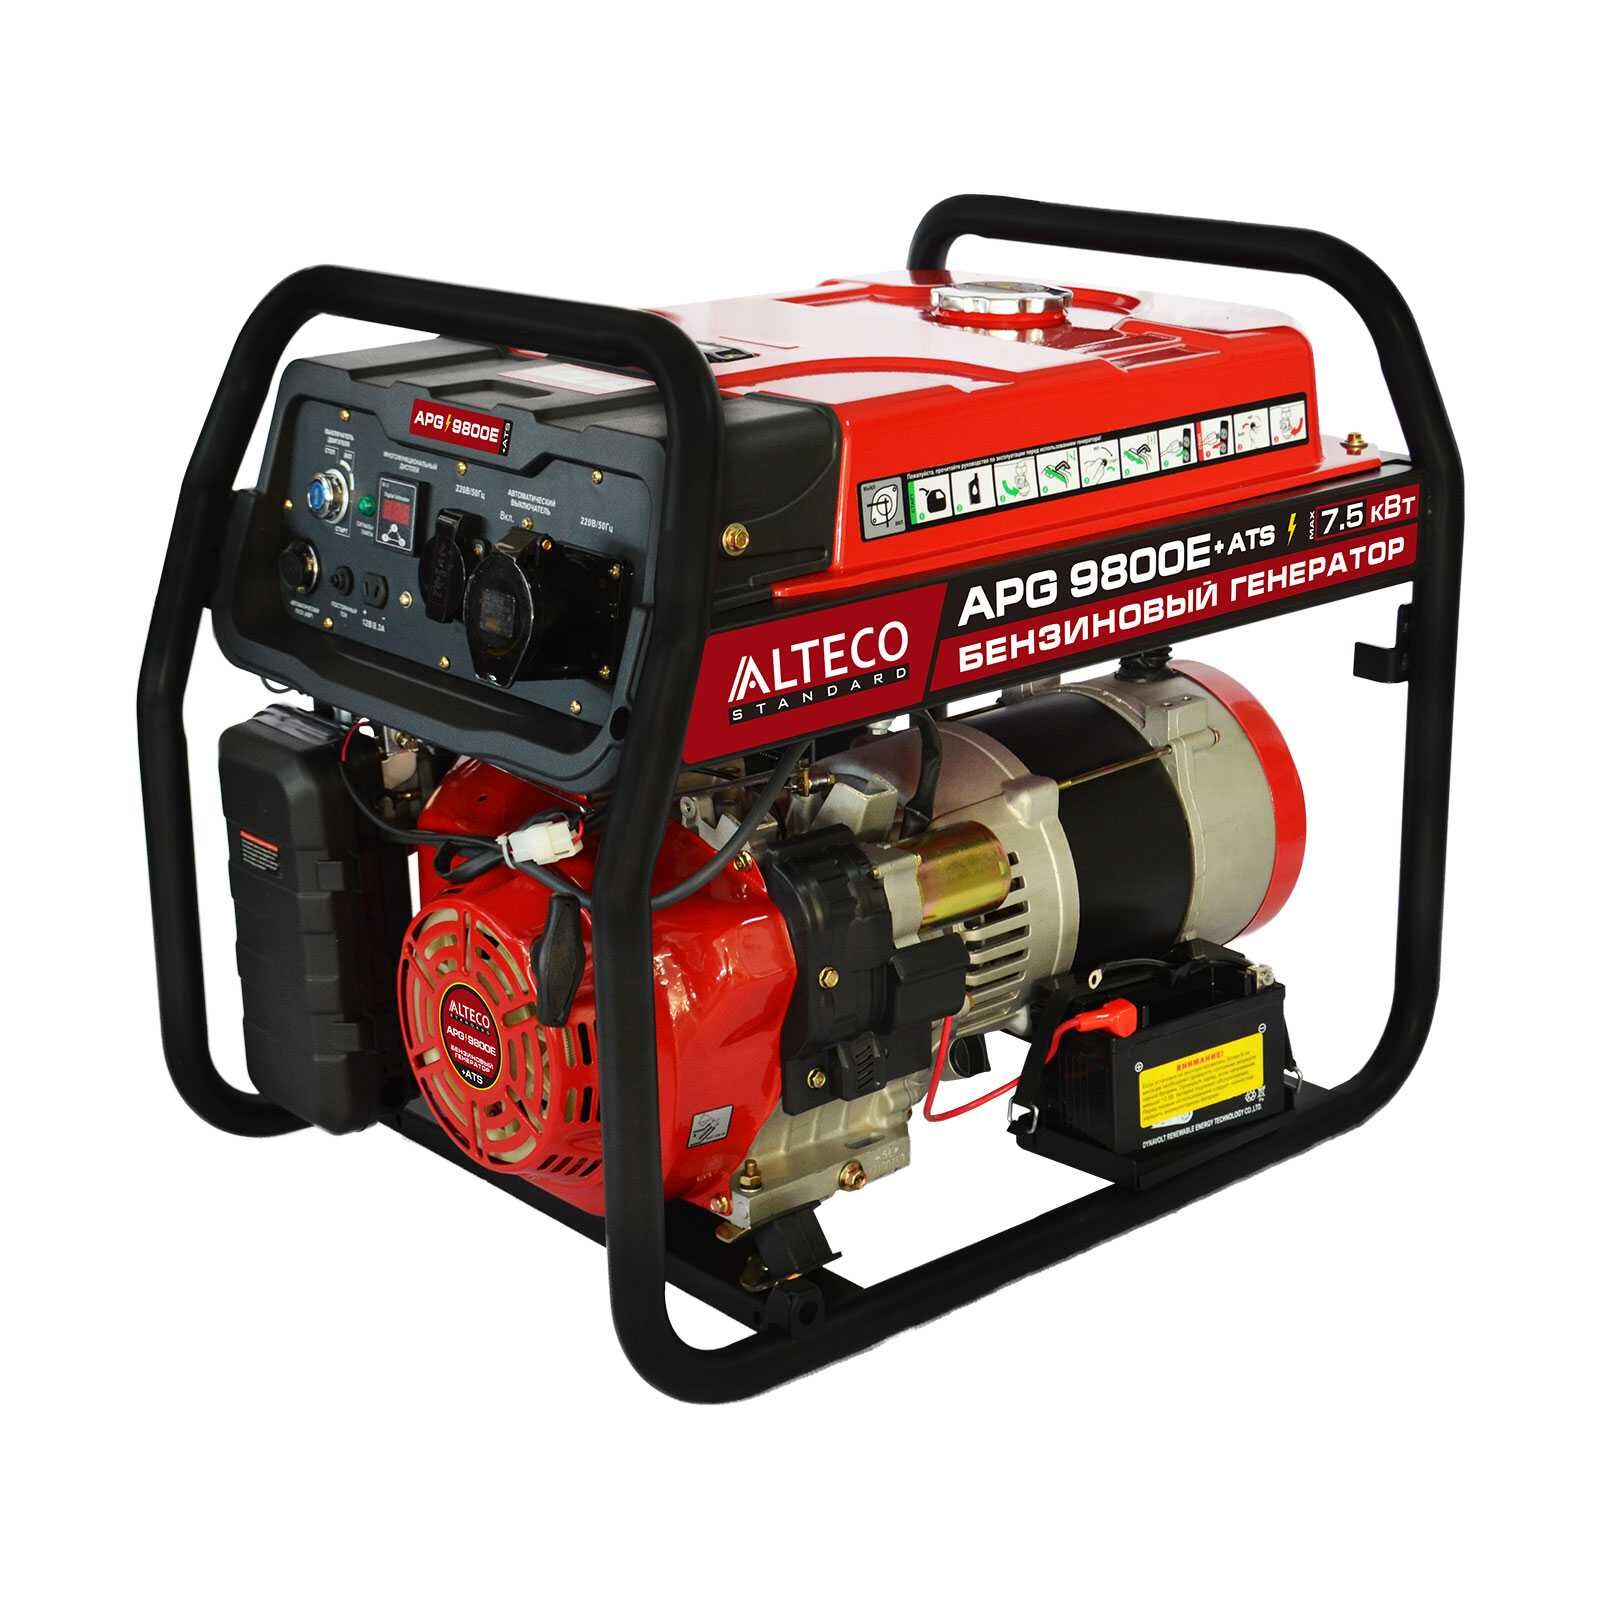 Бензиновый генератор APG 9800E+ATS (N) ALTECO Standard Alteco